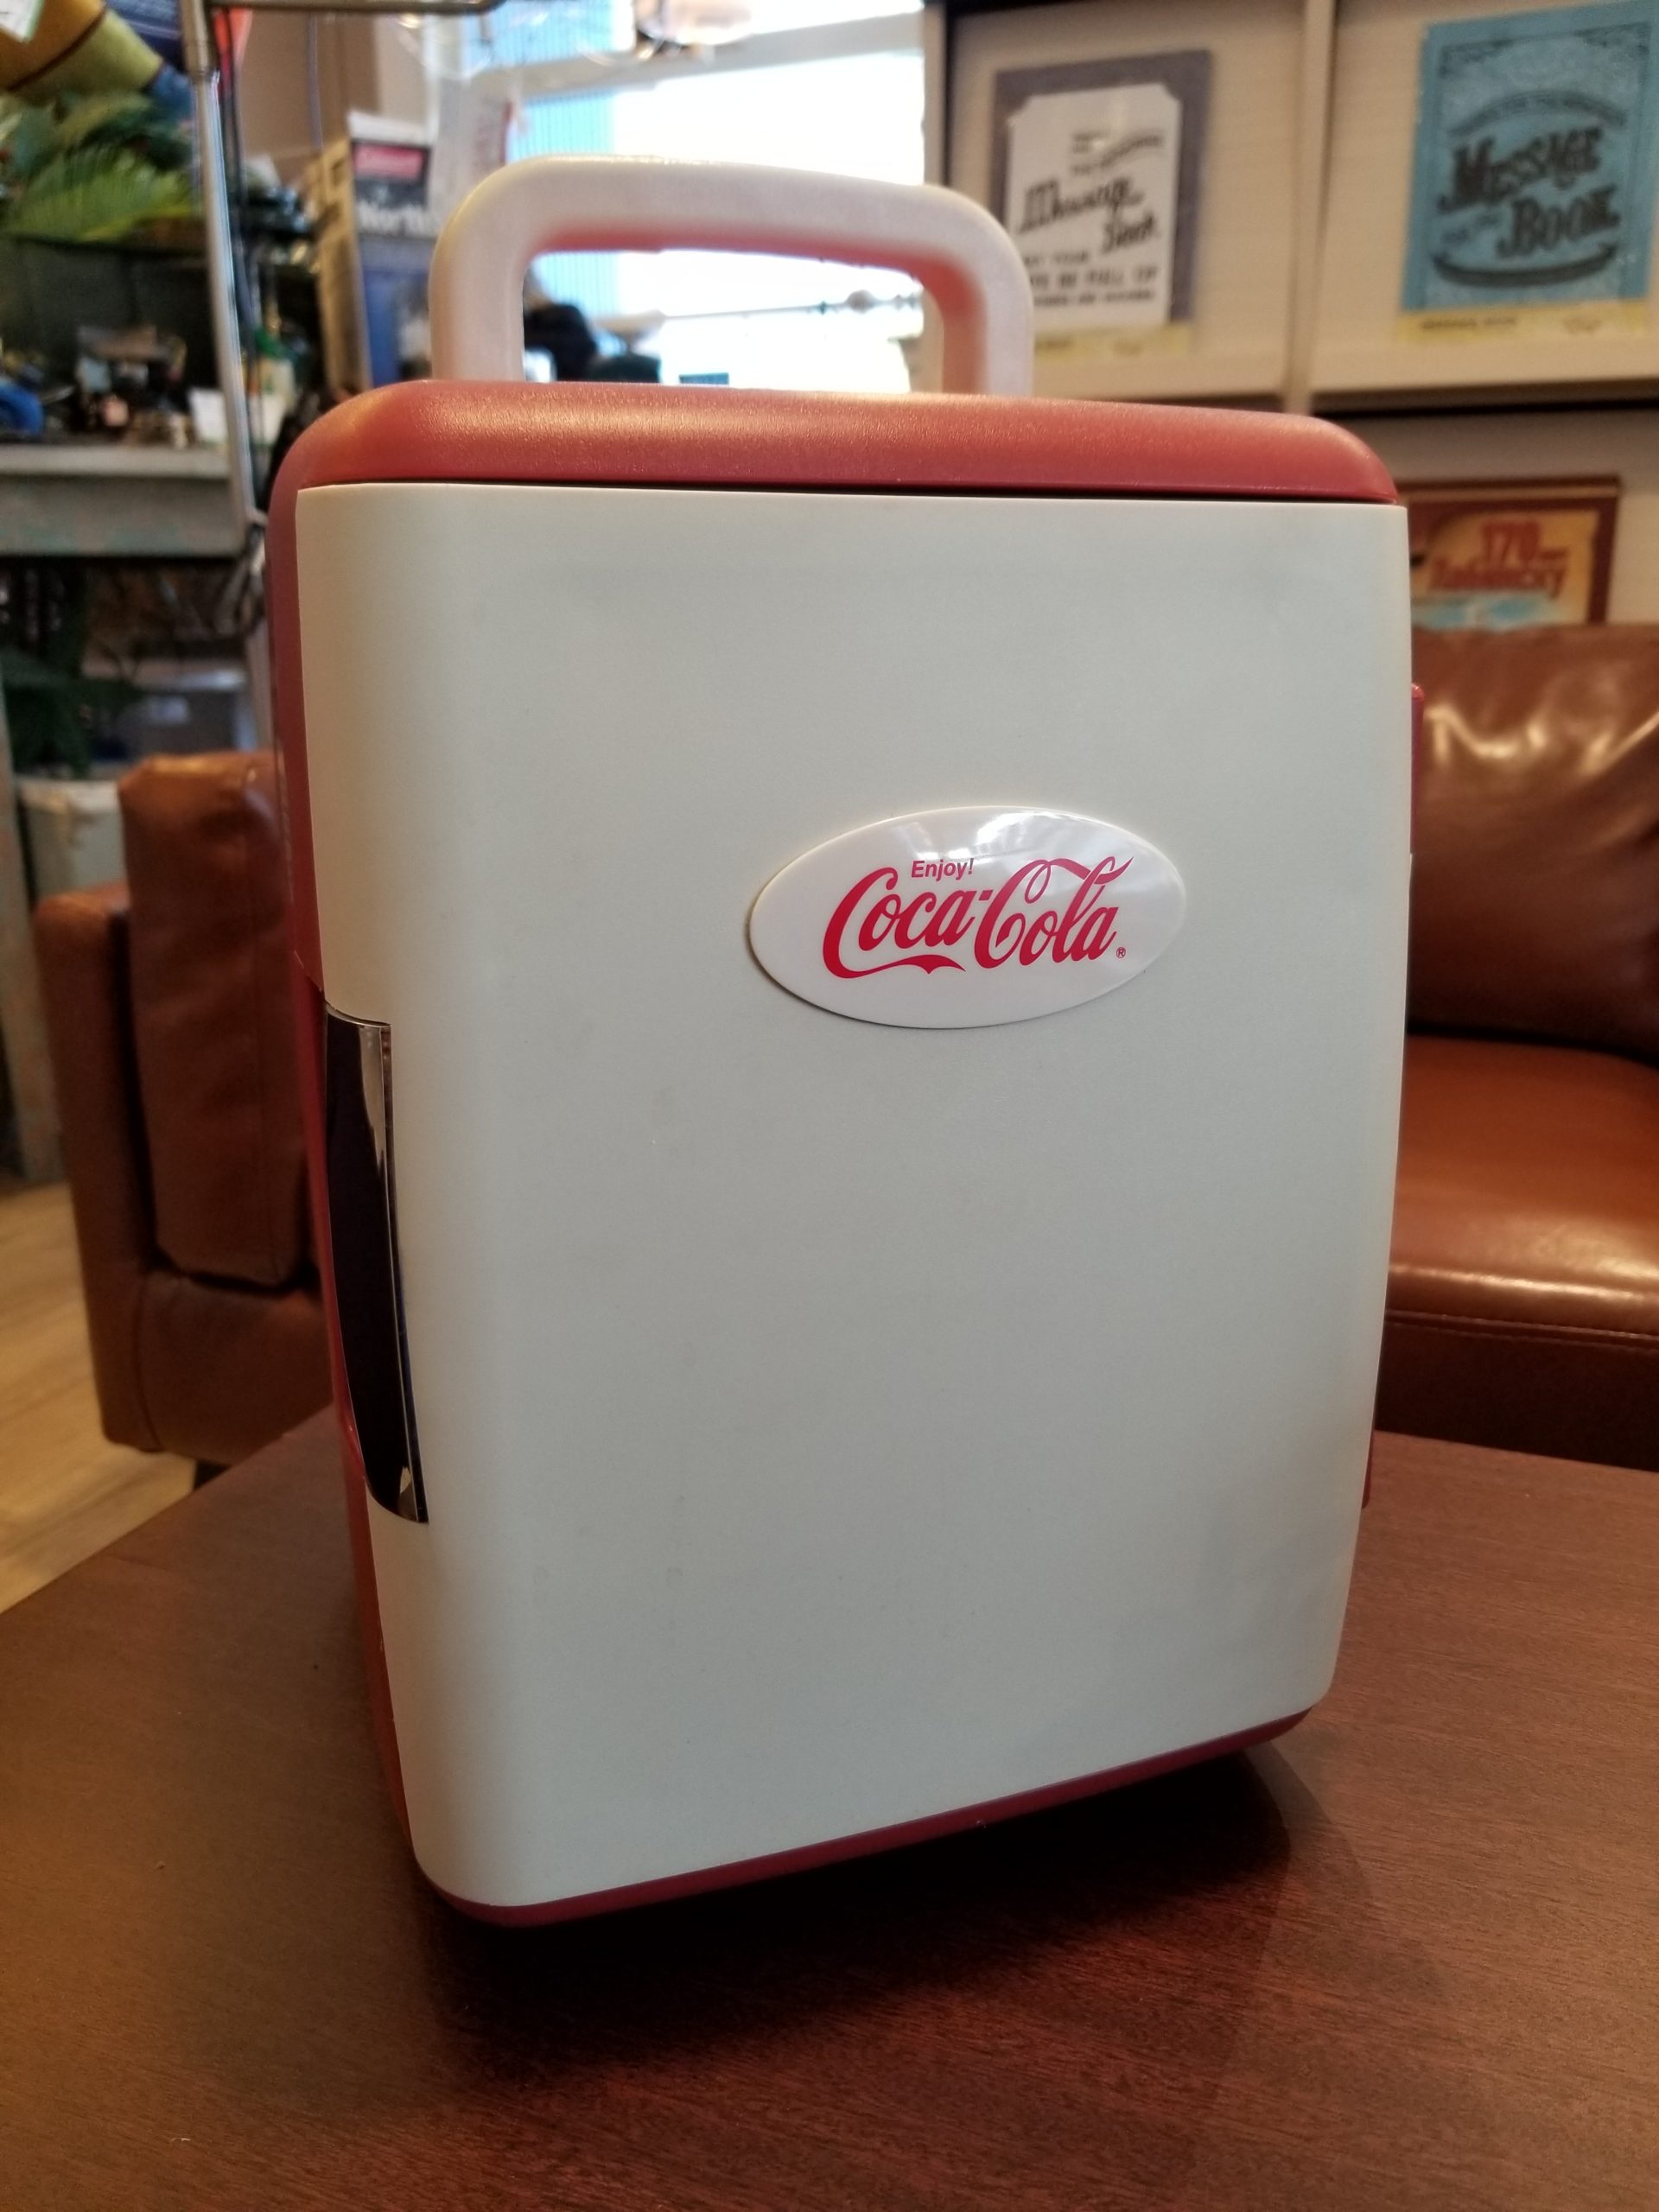 Coca-Cola / コカ・コーラ ポータブル冷蔵庫 冷温庫 コカ・コーラオリジナル 懸賞当選品 買取しました！ | 愛知と岐阜のリサイクル